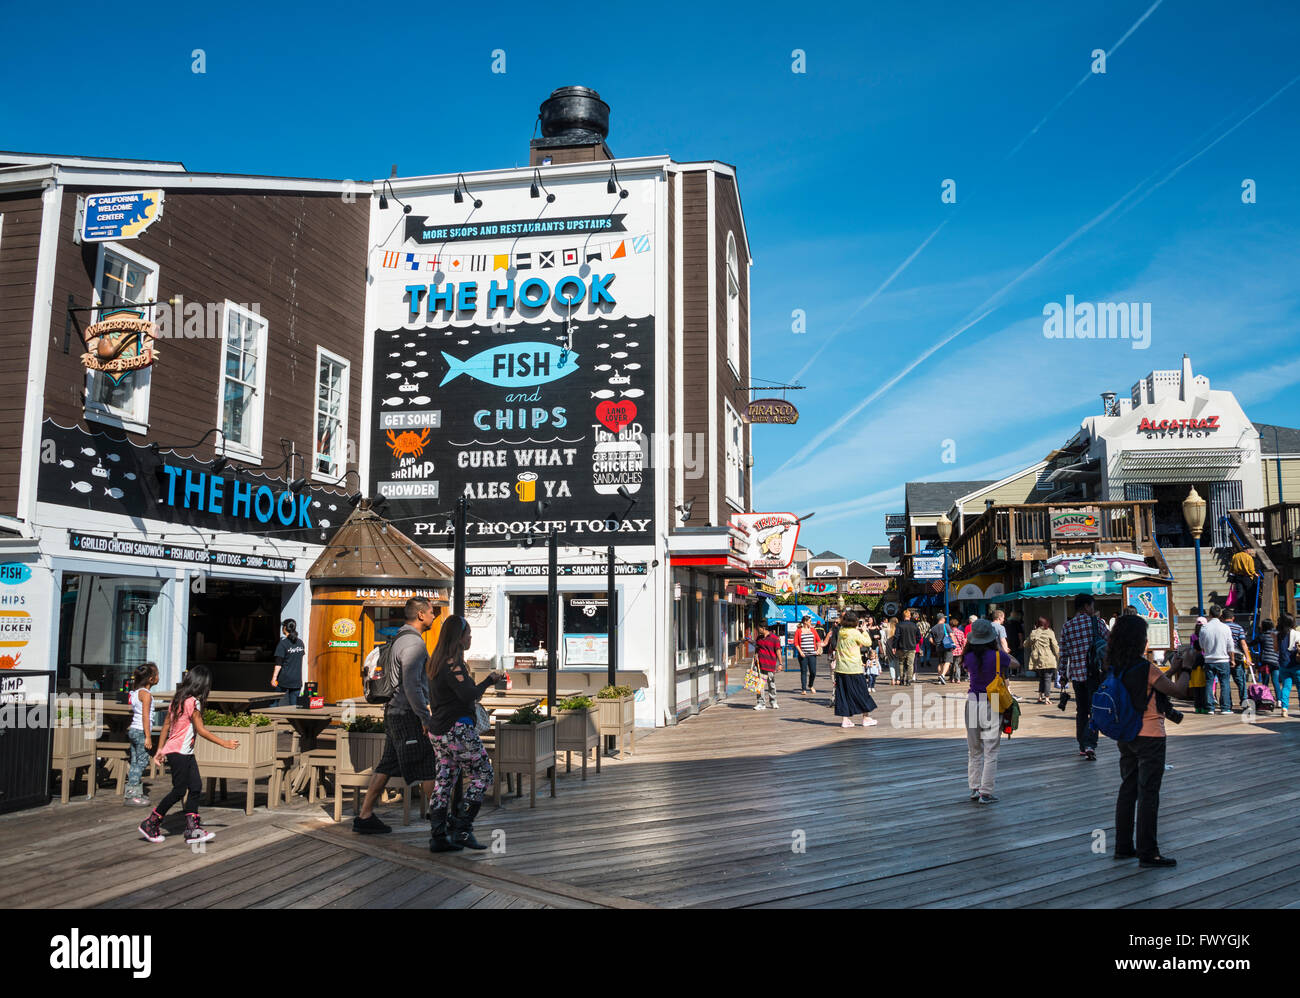 Geschäfte und Restaurants am Pier 39, Fishermans Wharf, Hafen, San Francisco, Kalifornien, USA Stockfoto